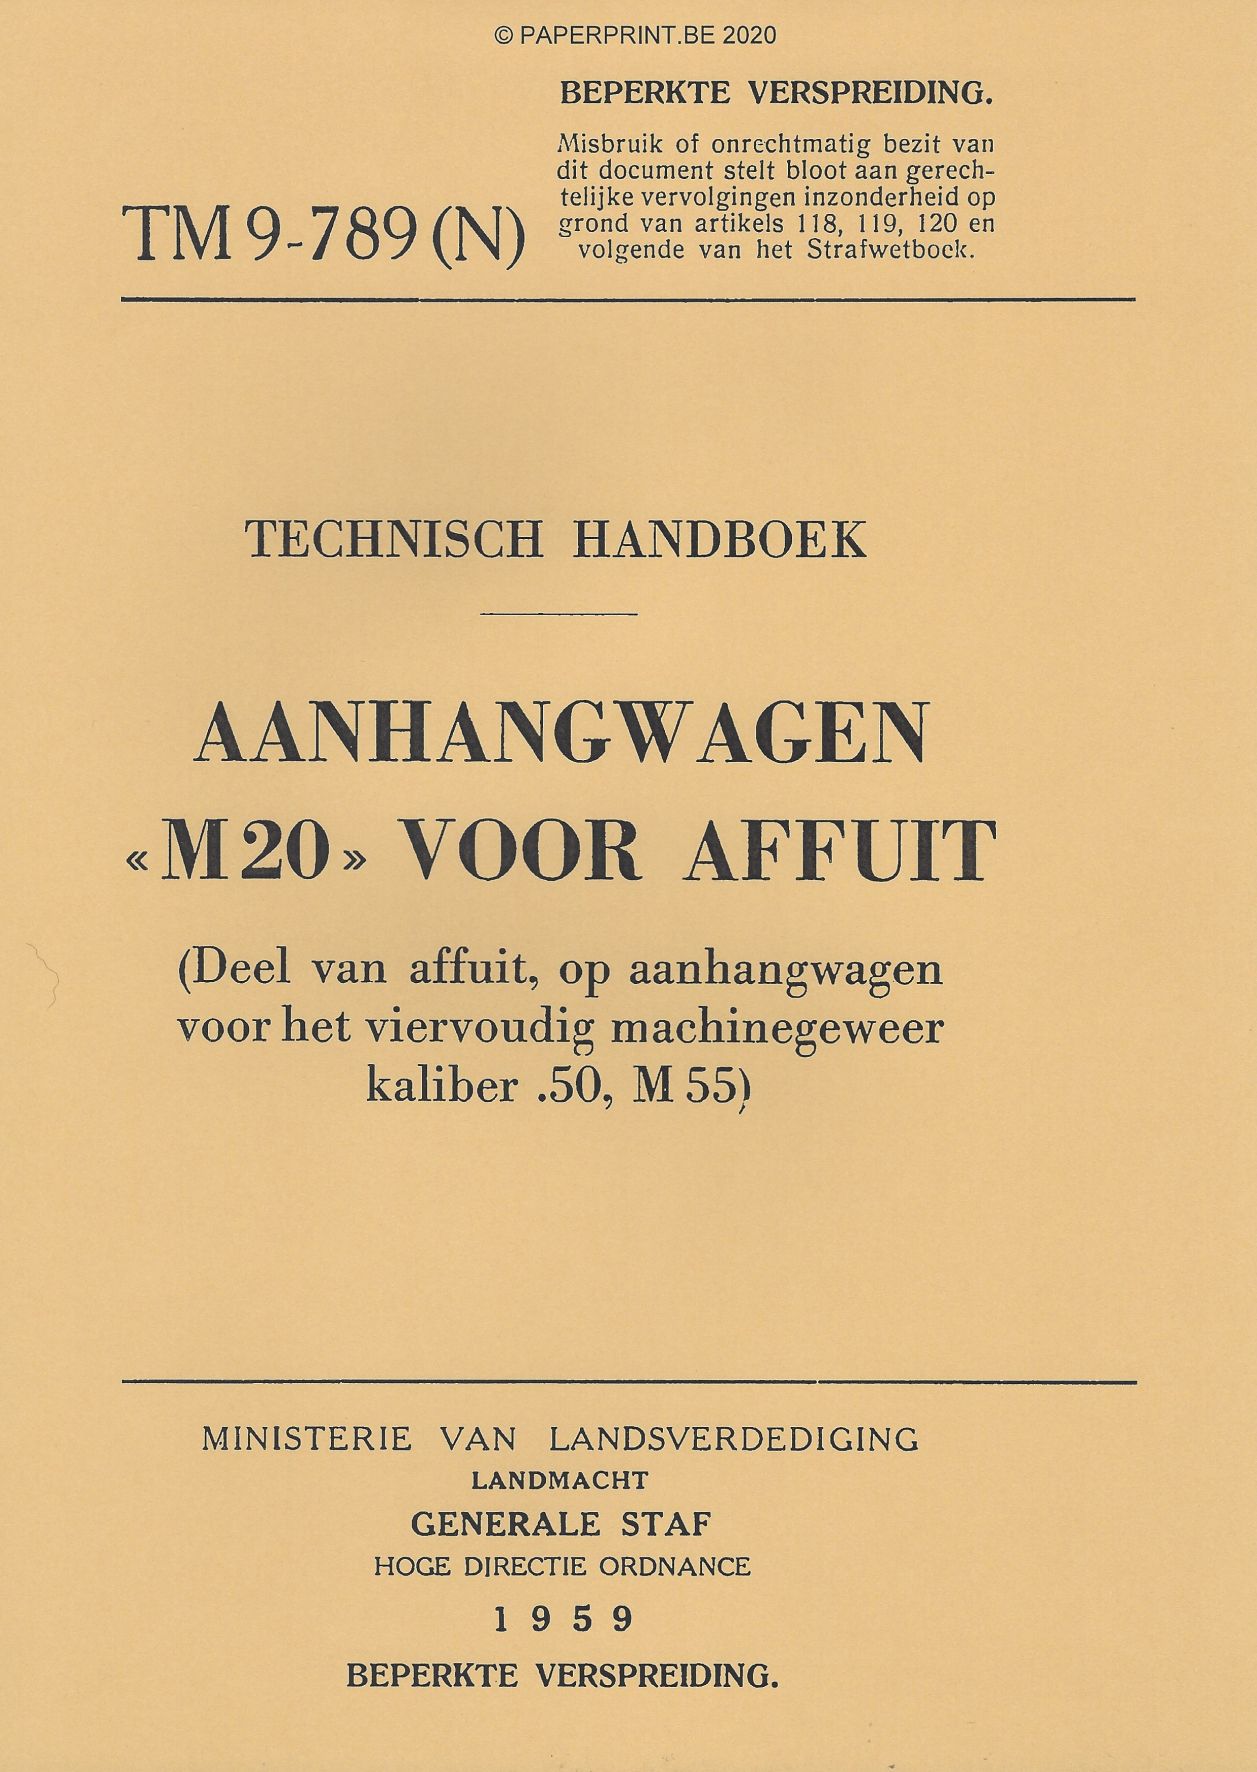 TM 9-789 NL AANHANGWAGEN M20 VOOR AFFUIT